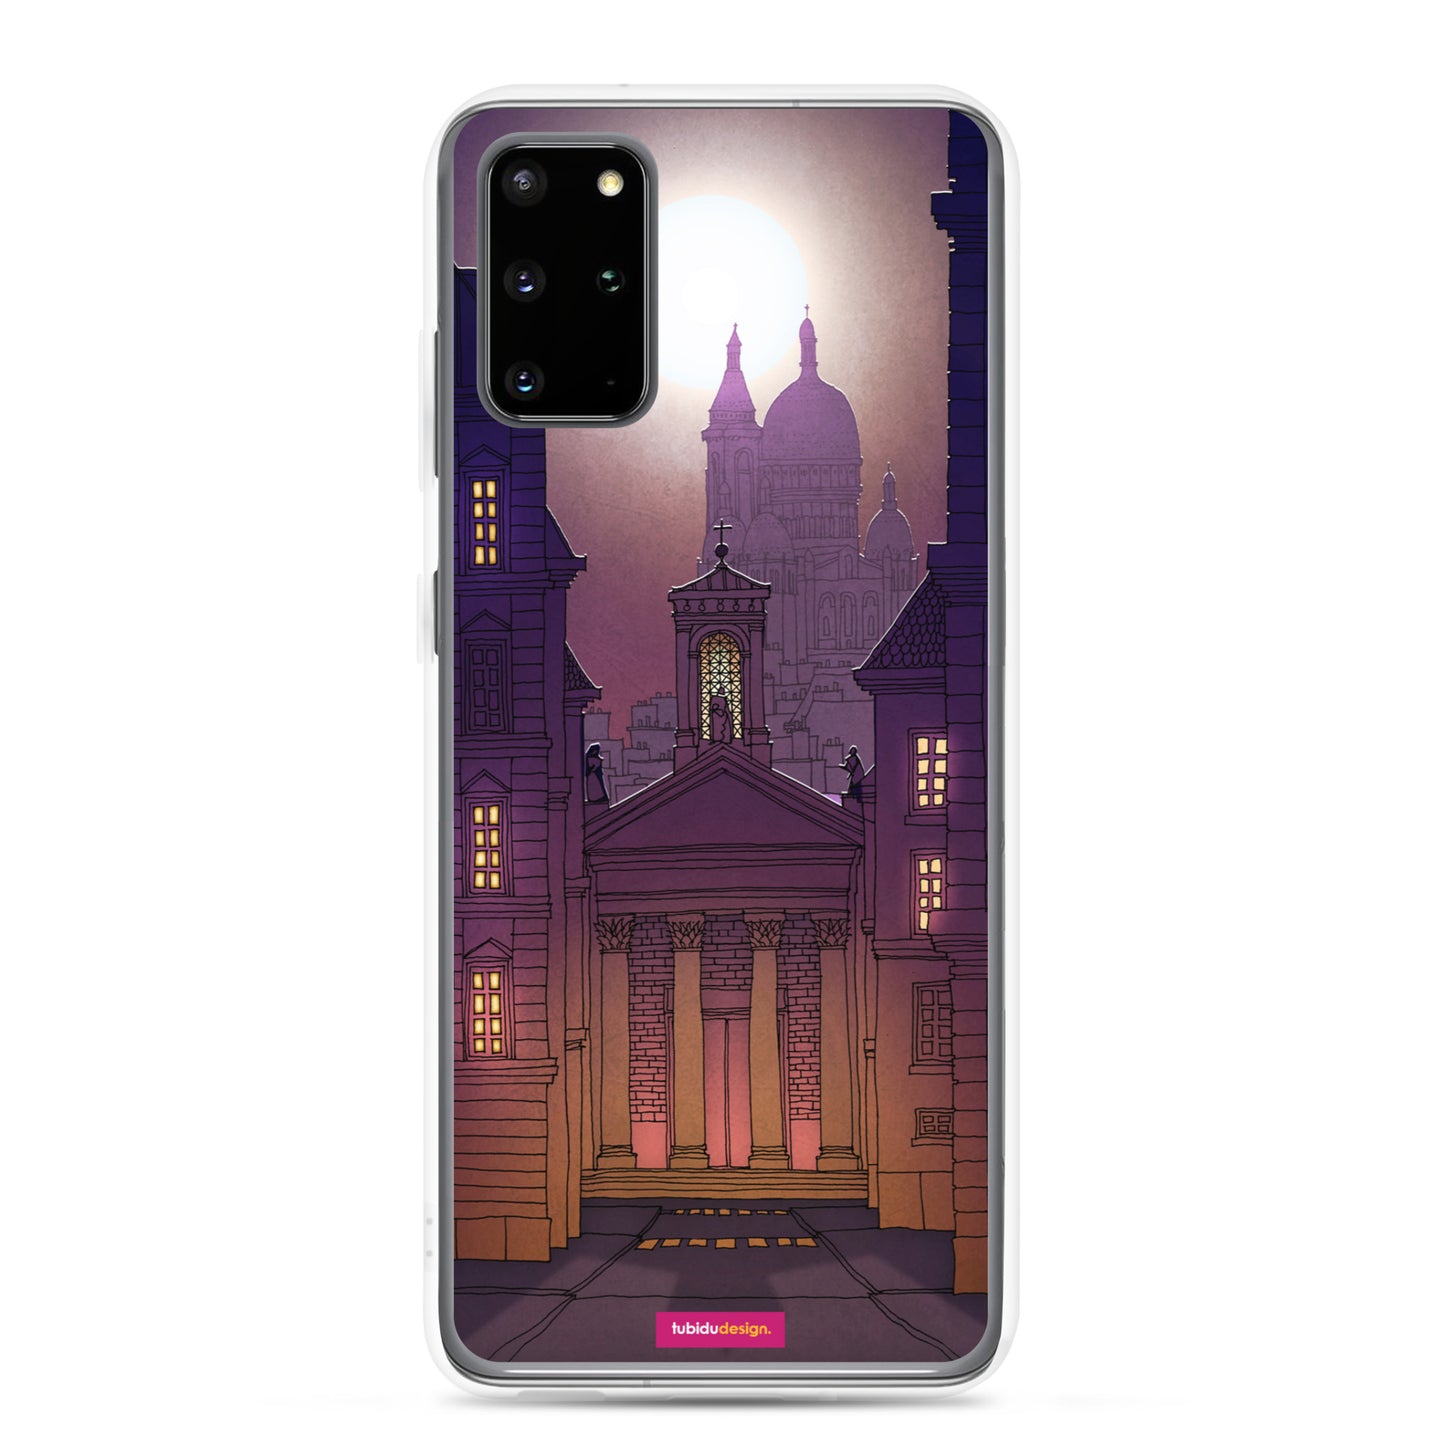 Sacre Coeur (deep purple) - Illustrated Samsung Phone Case